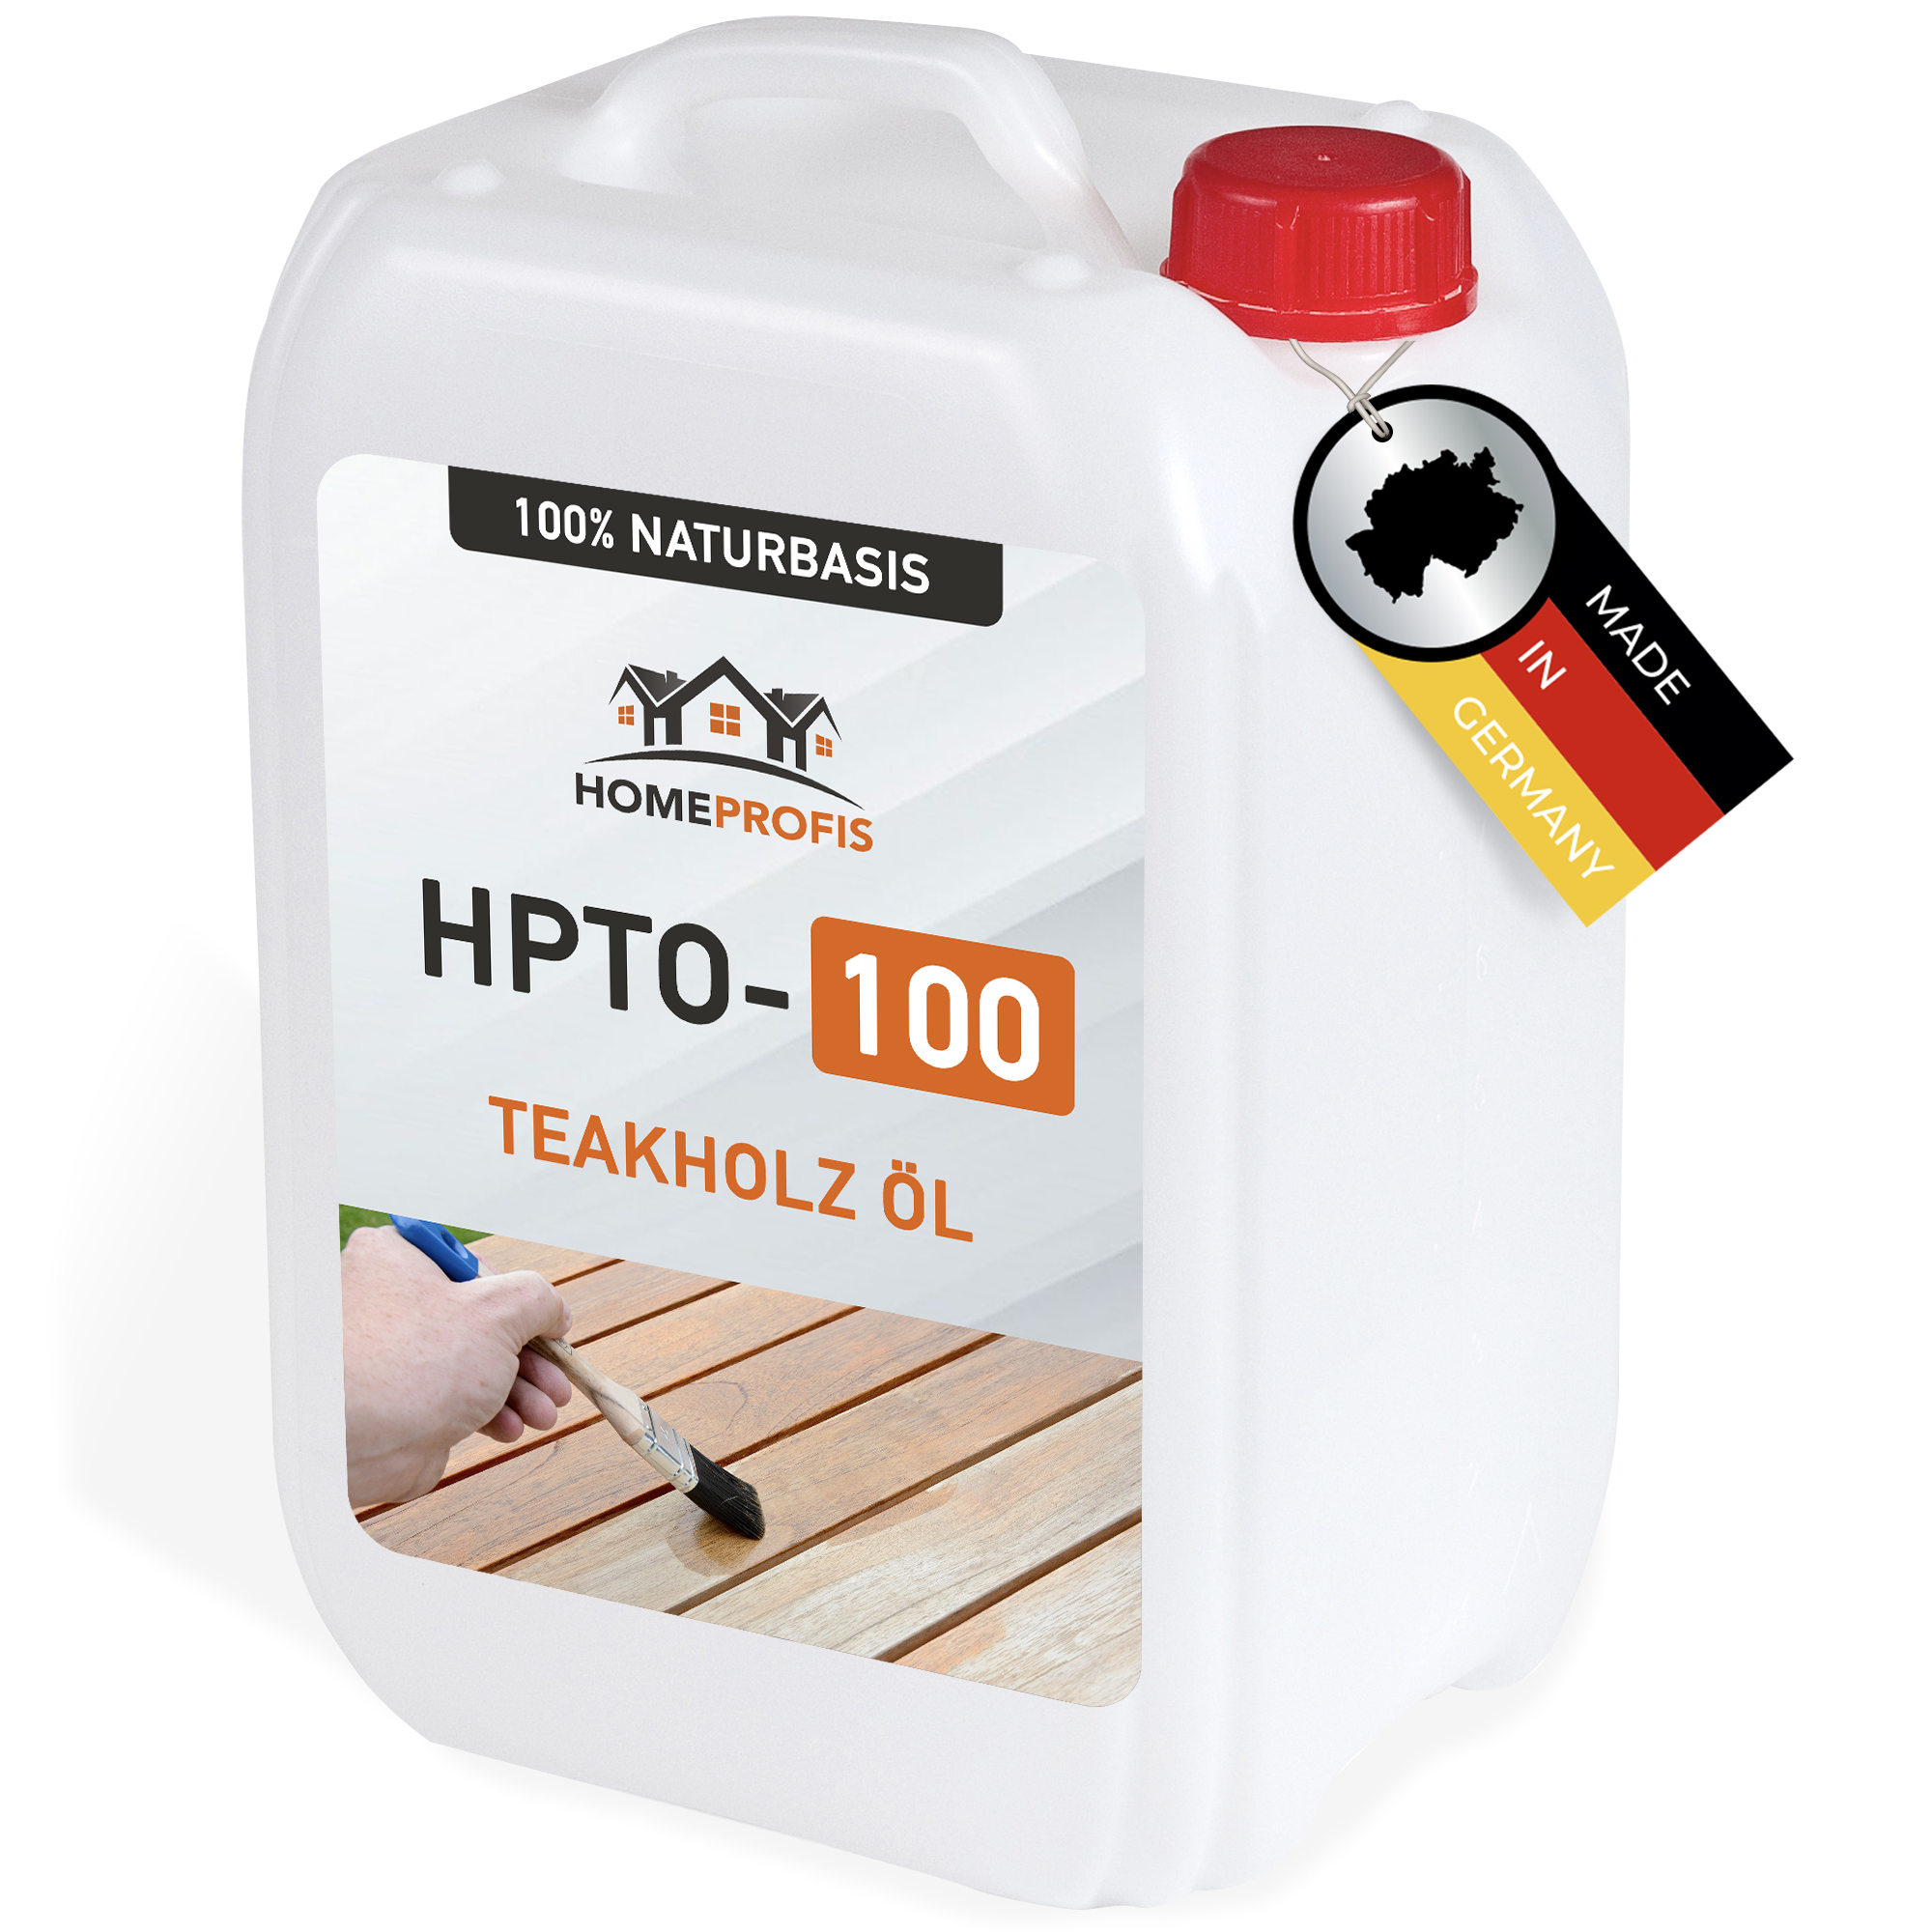 HPTO-100 Teakholz Öl auf natürlicher Basis